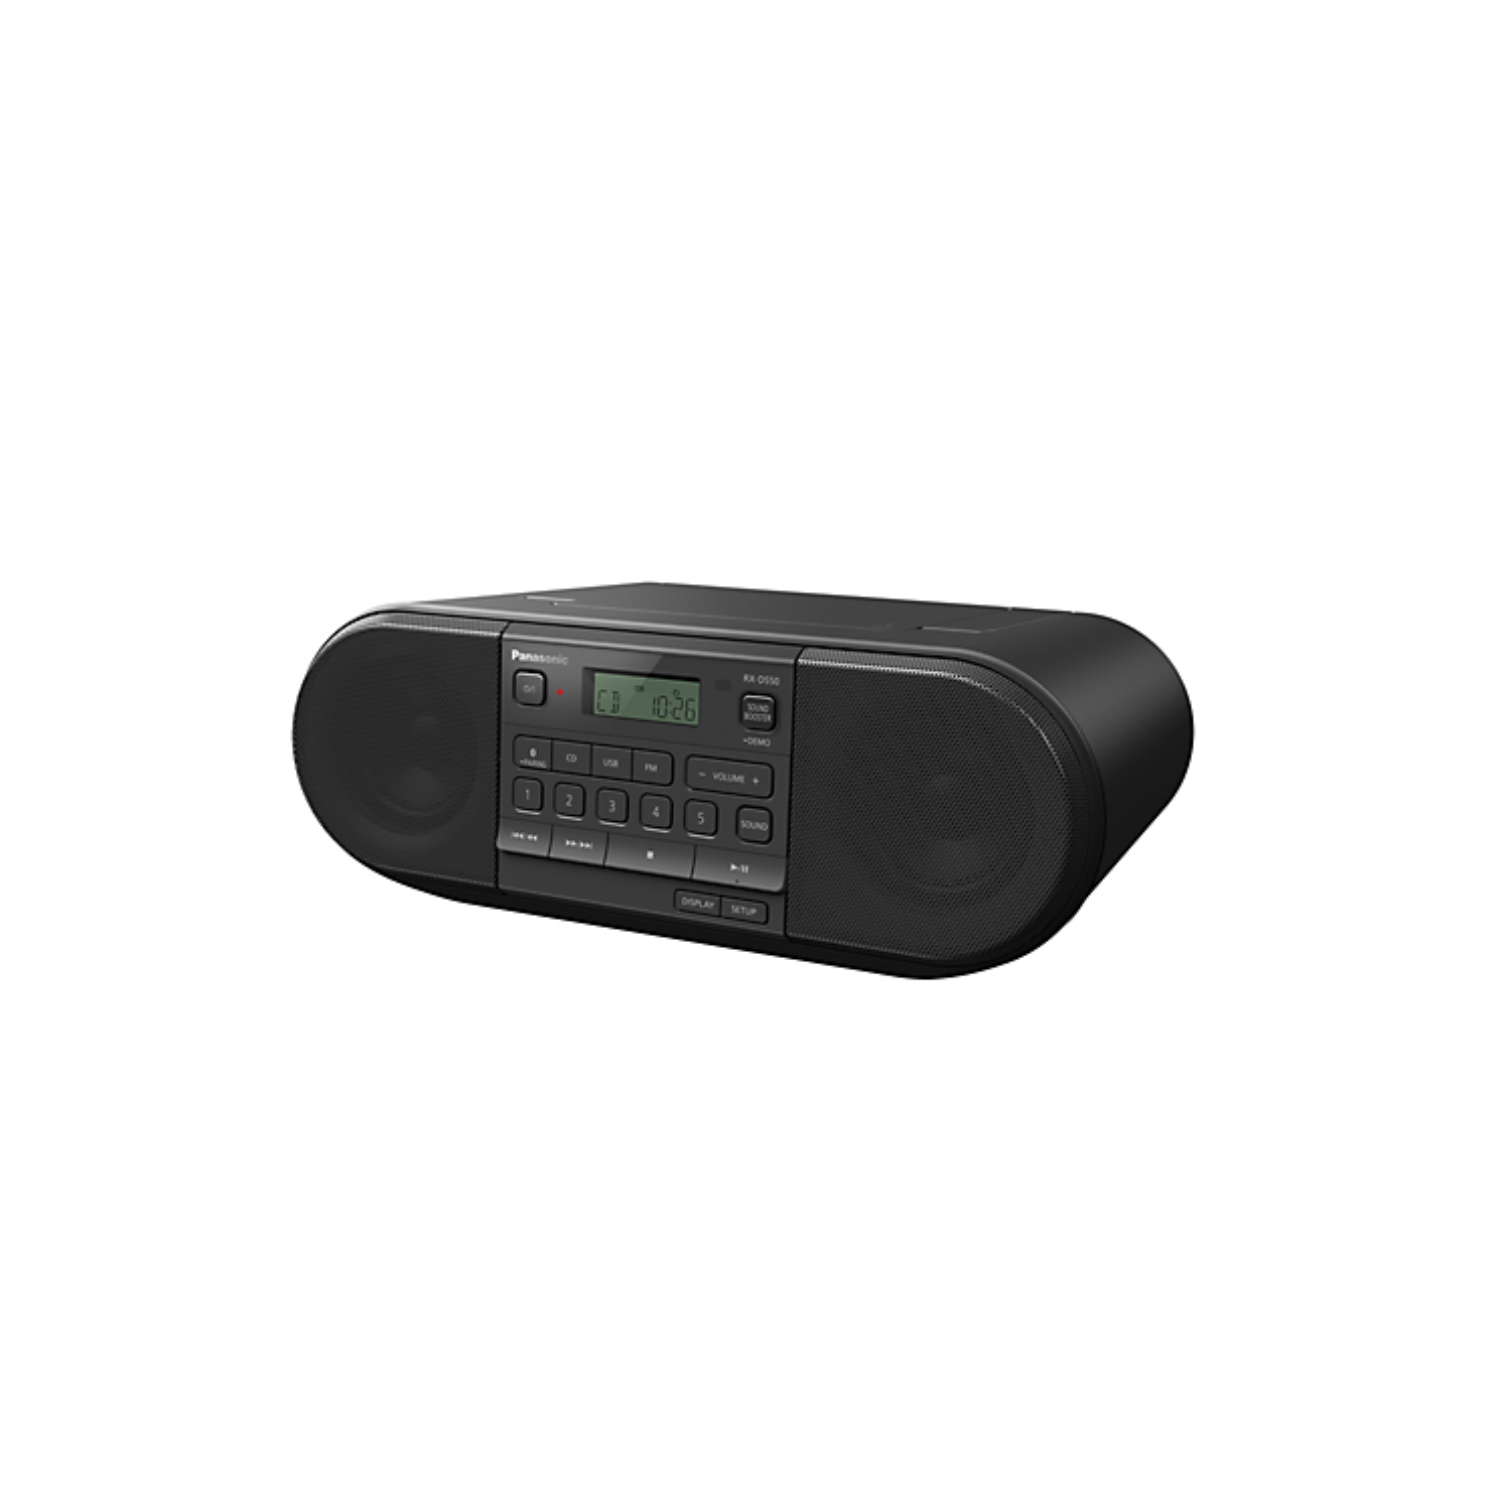 Radio portable Panasonic RX-D550 avec CD, Bluetooth et USB - Boîte endommagée